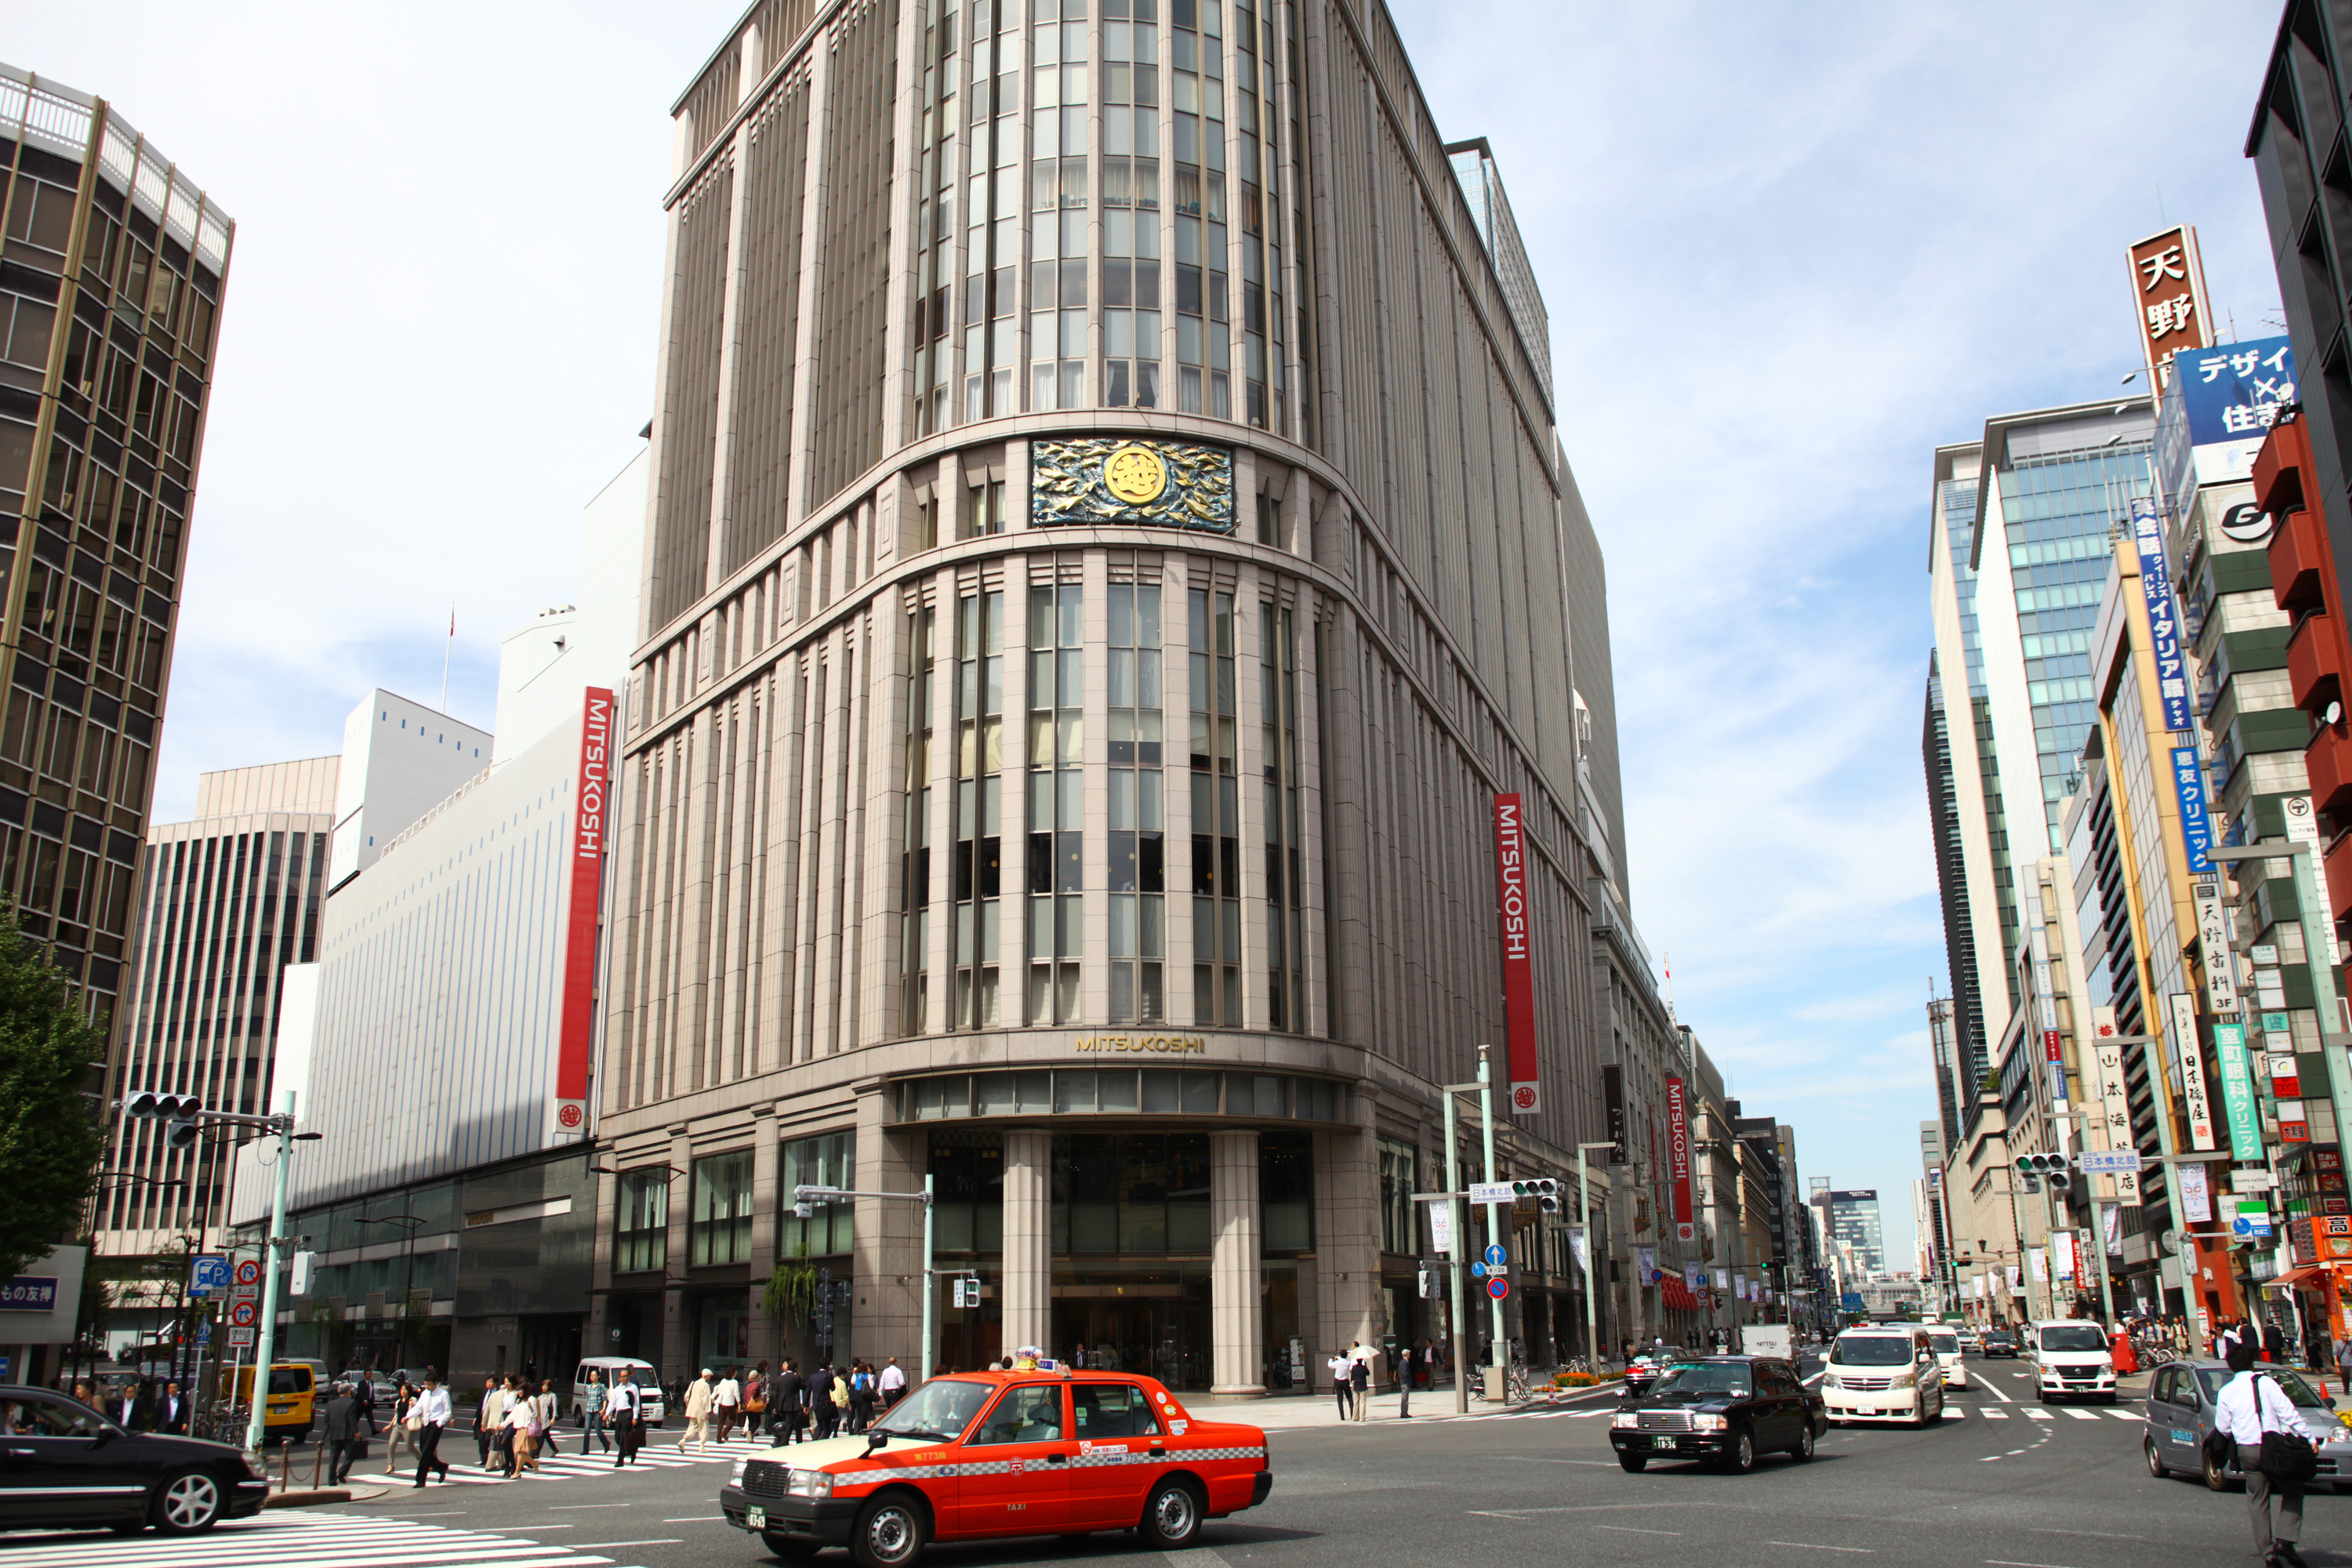 Mitsukoshi Nihonbashi Main Store | Shopping in Nihonbashi, Tokyo